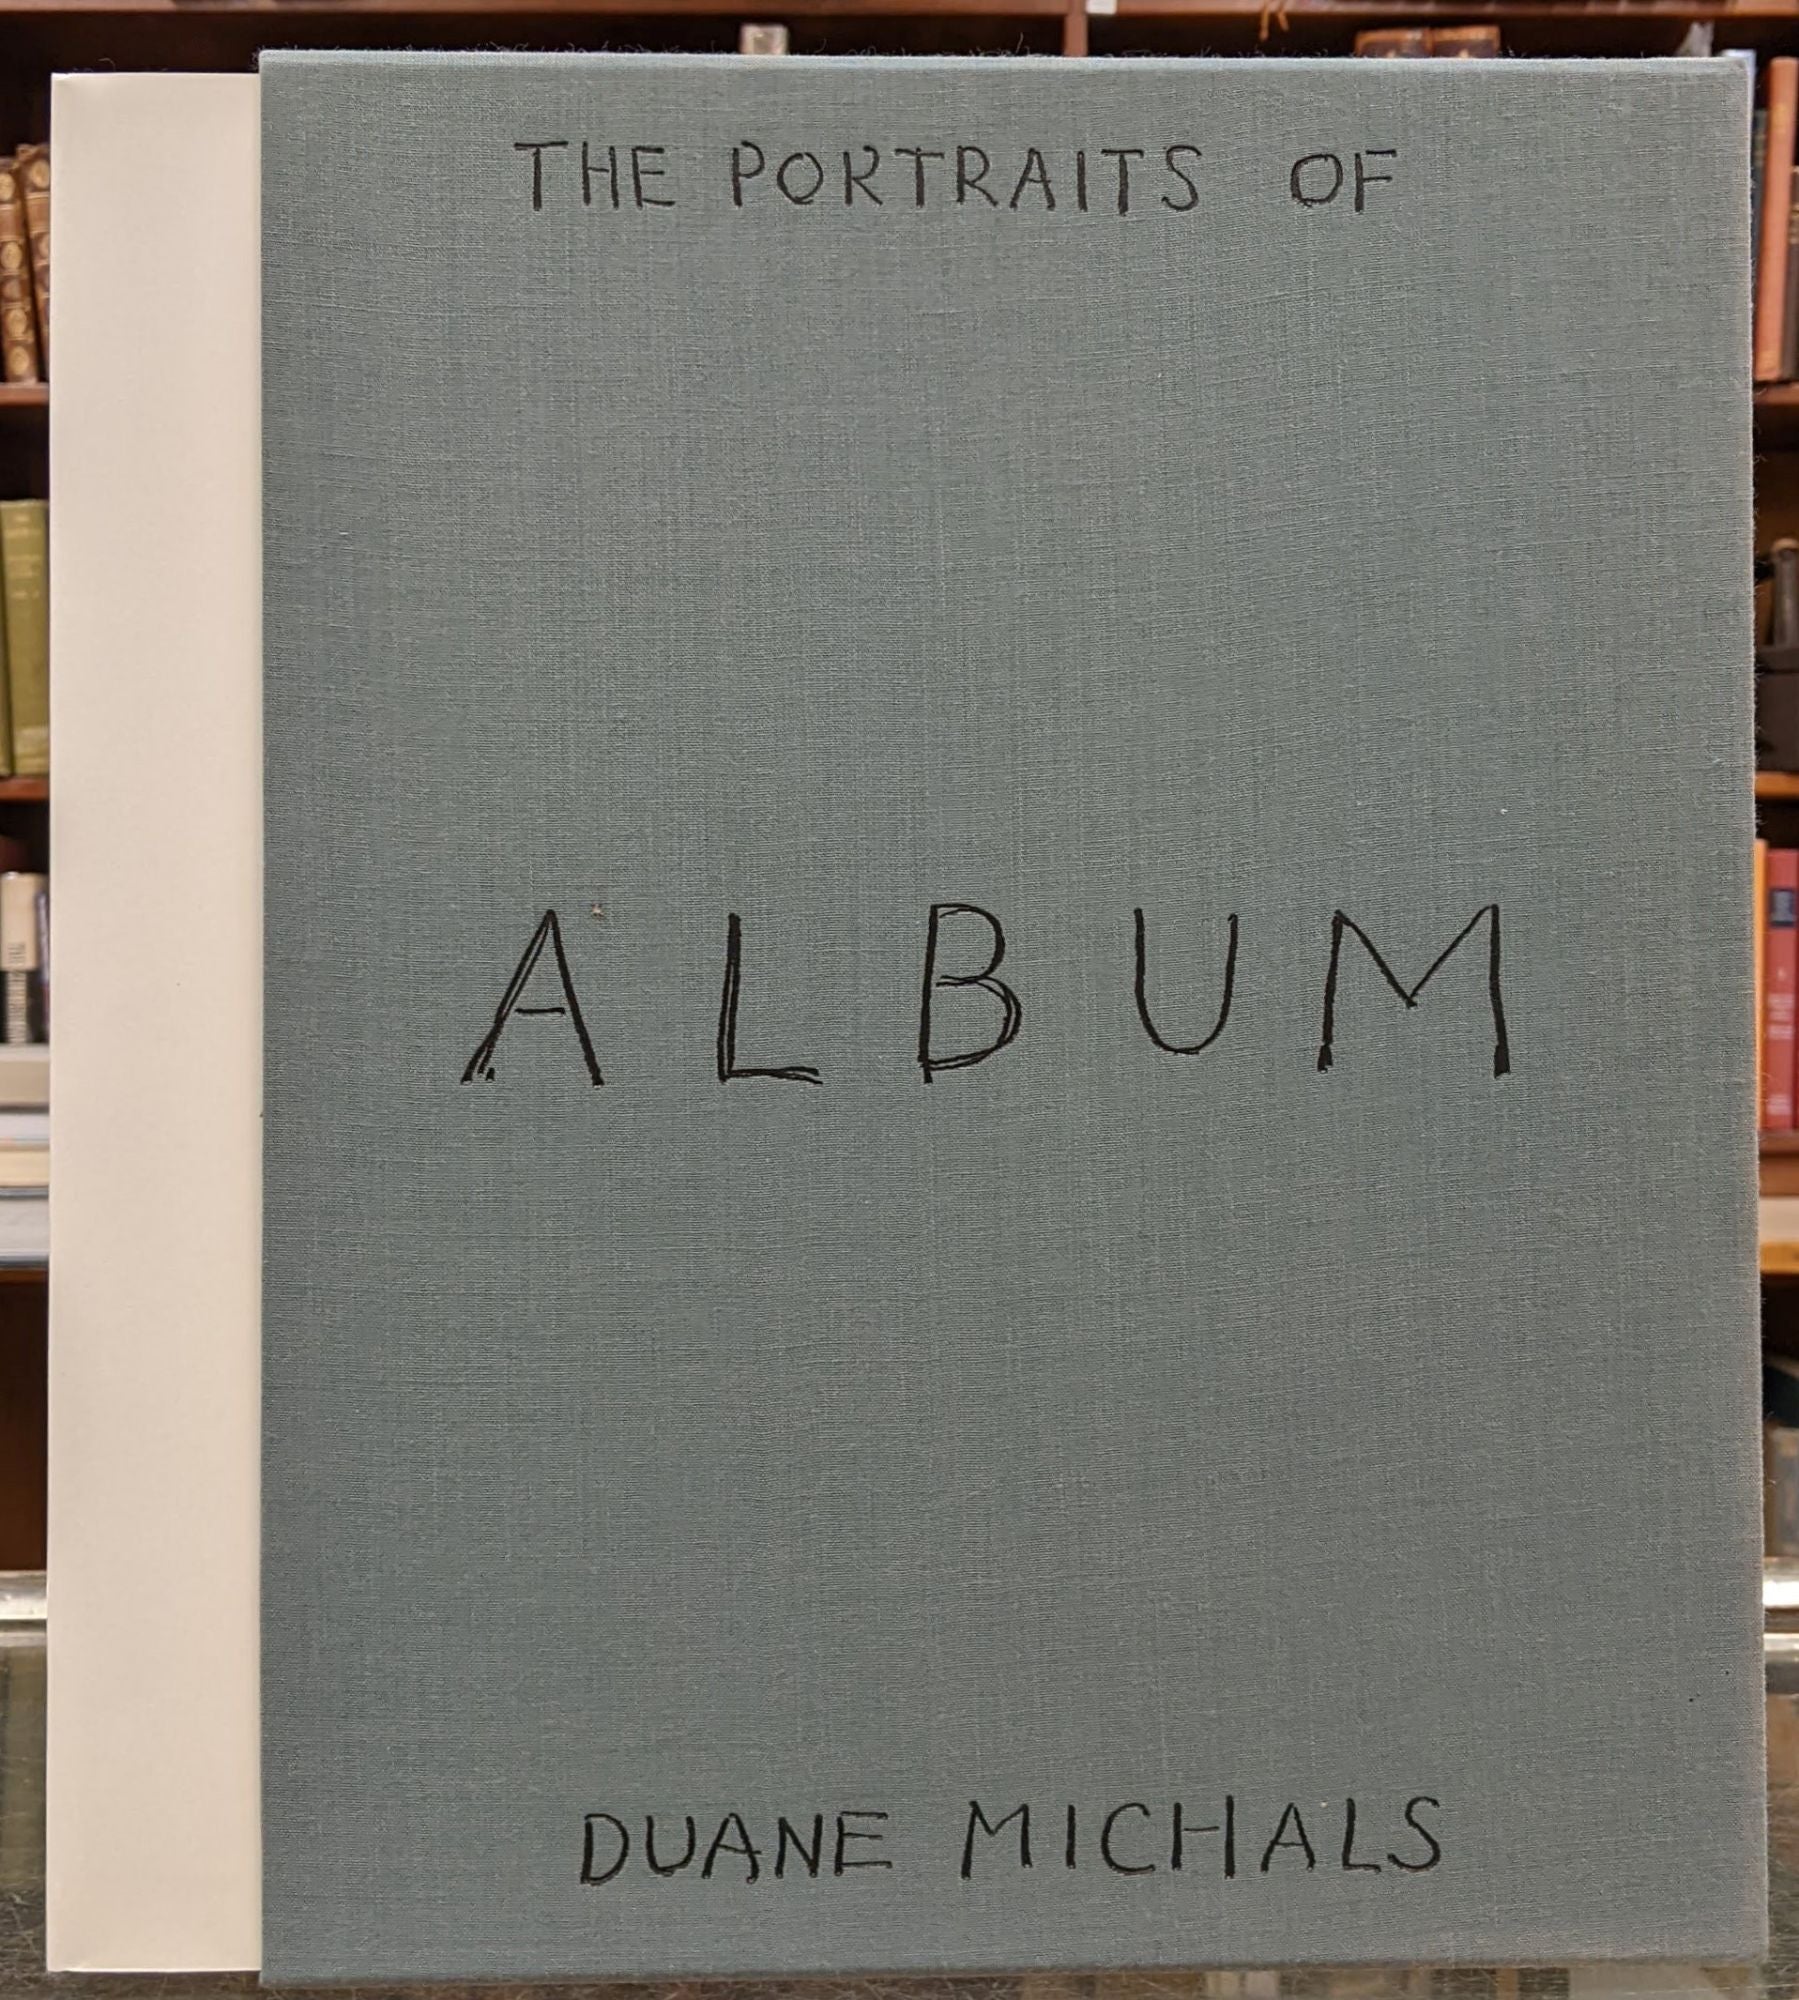 Album: The Portraits of Duane Michals by Duane Michals on Moe's Books